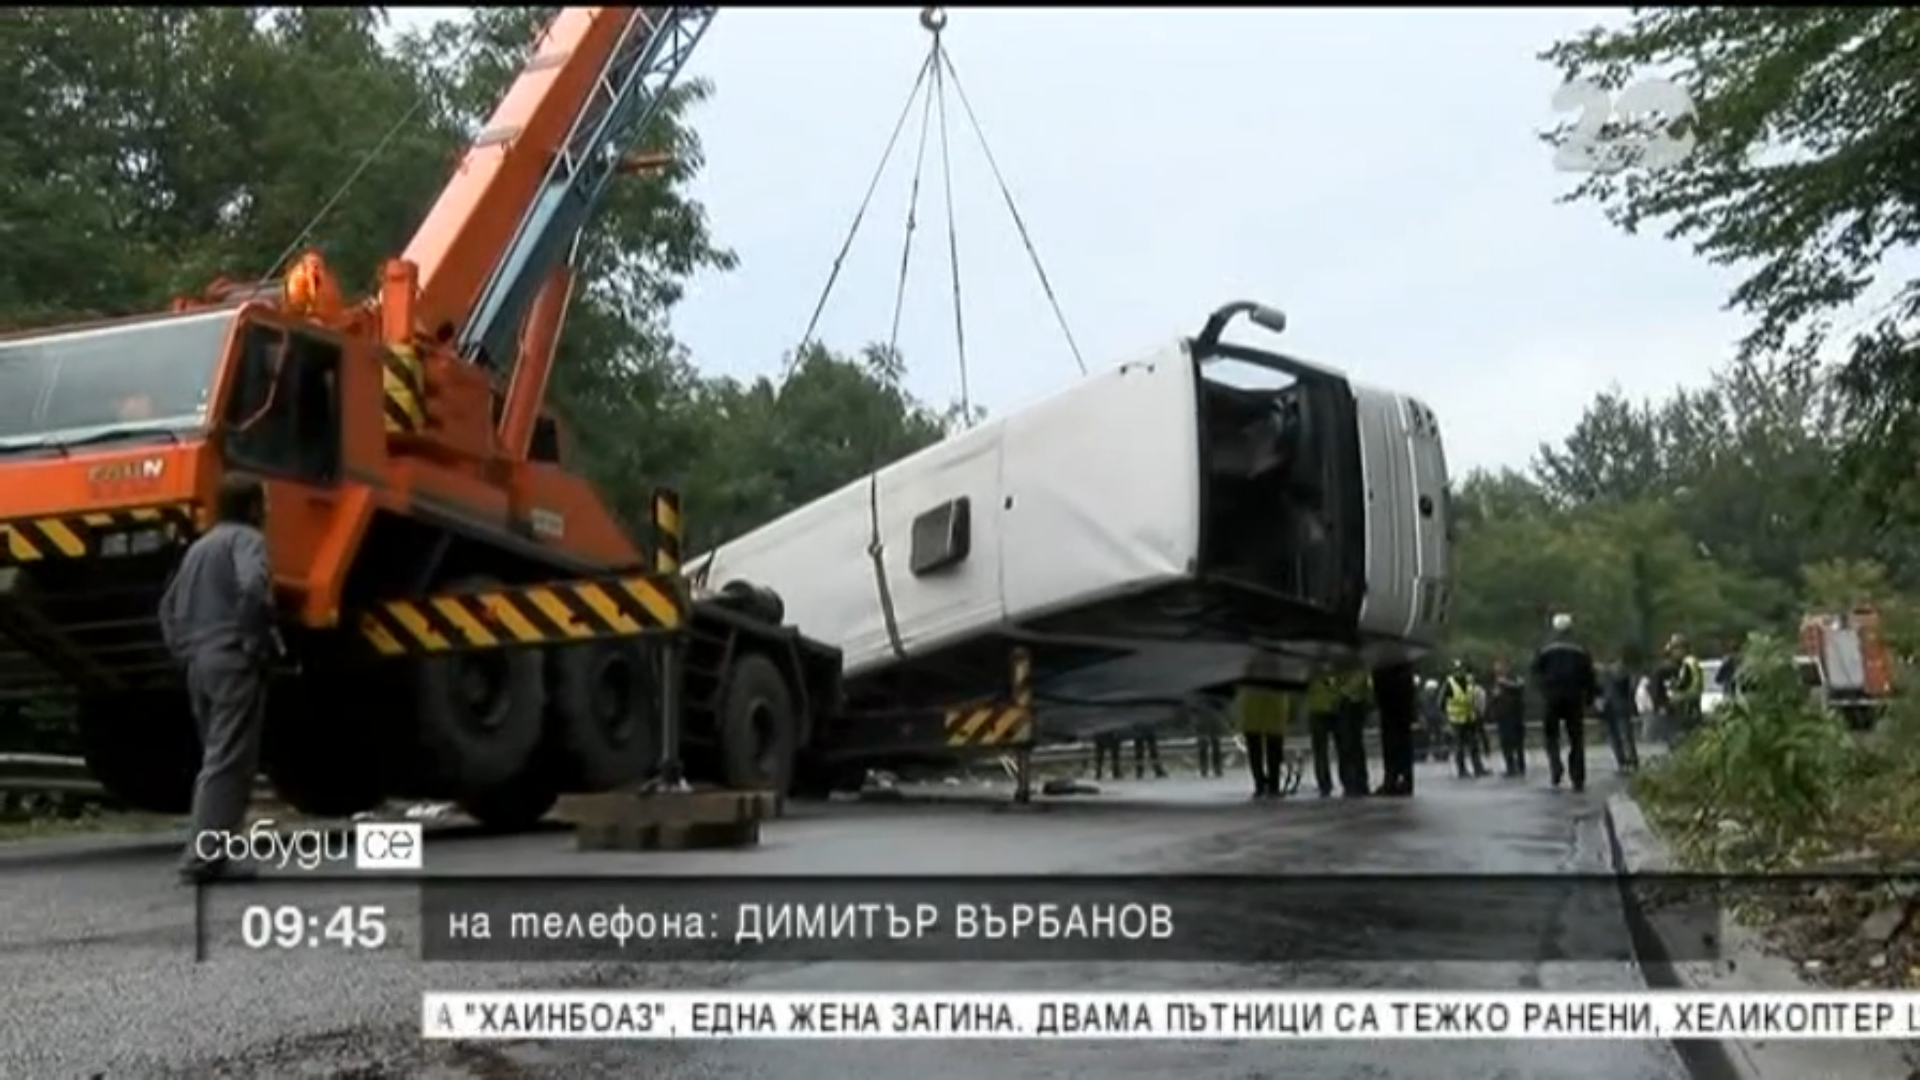 FILMUL accidentului din Bulgaria. Ipotezele politiei locale dupa ce un autocar cu 25 de romani a cazut intr-o râpă - Imaginea 5